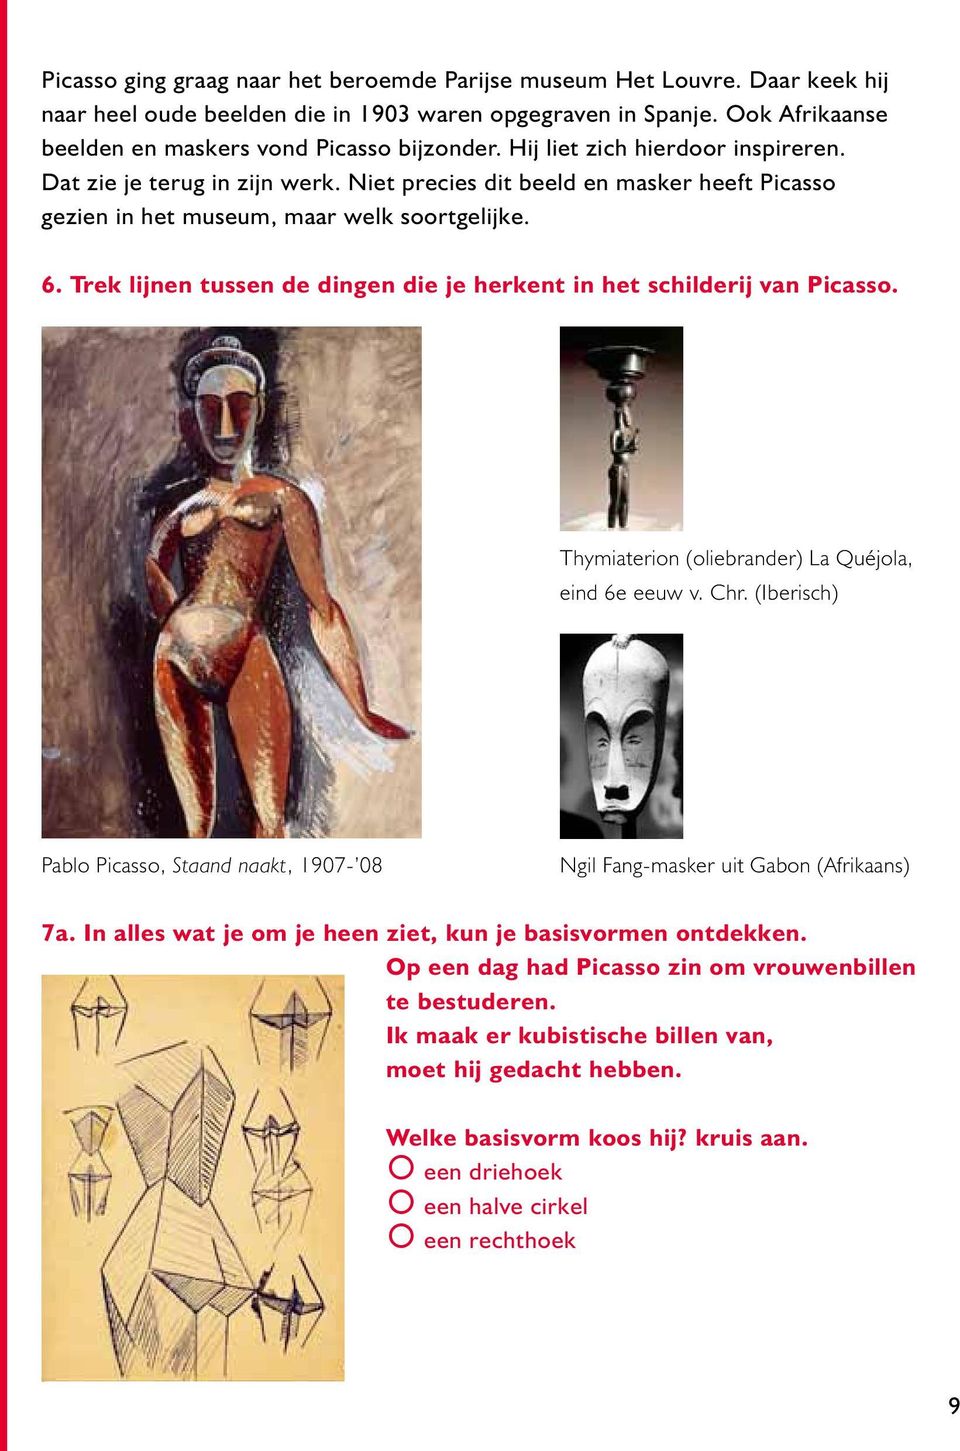 Trek lijnen tussen de dingen die je herkent in het schilderij van Picasso. Thymiaterion (oliebrander) La Quéjola, eind 6e eeuw v. Chr.